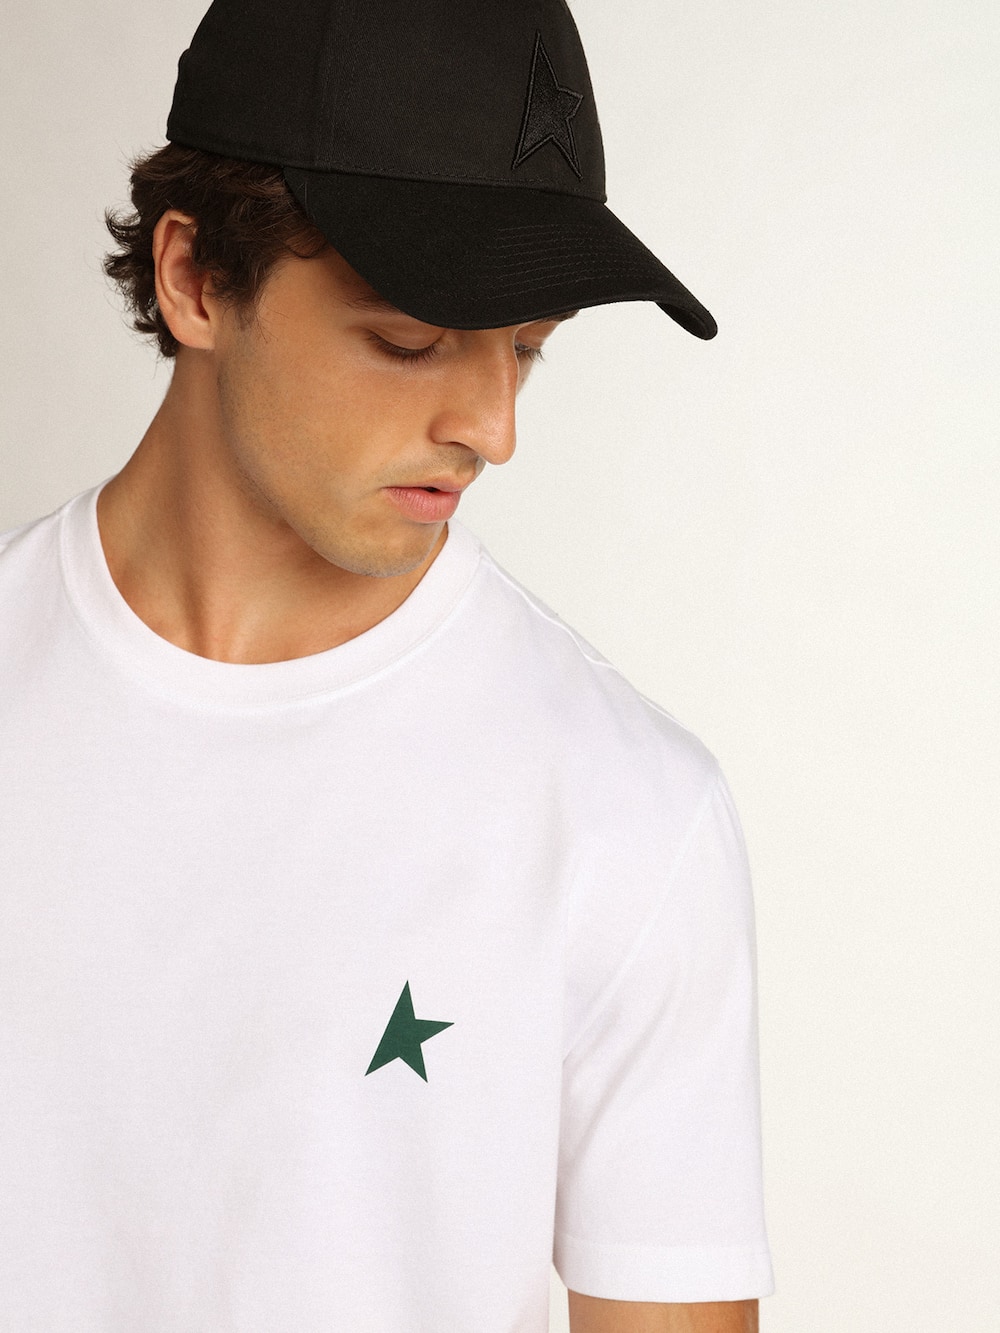 Golden Goose - Weißes T-Shirt aus der Star Collection mit grünem Kontraststern auf der Vorderseite in 